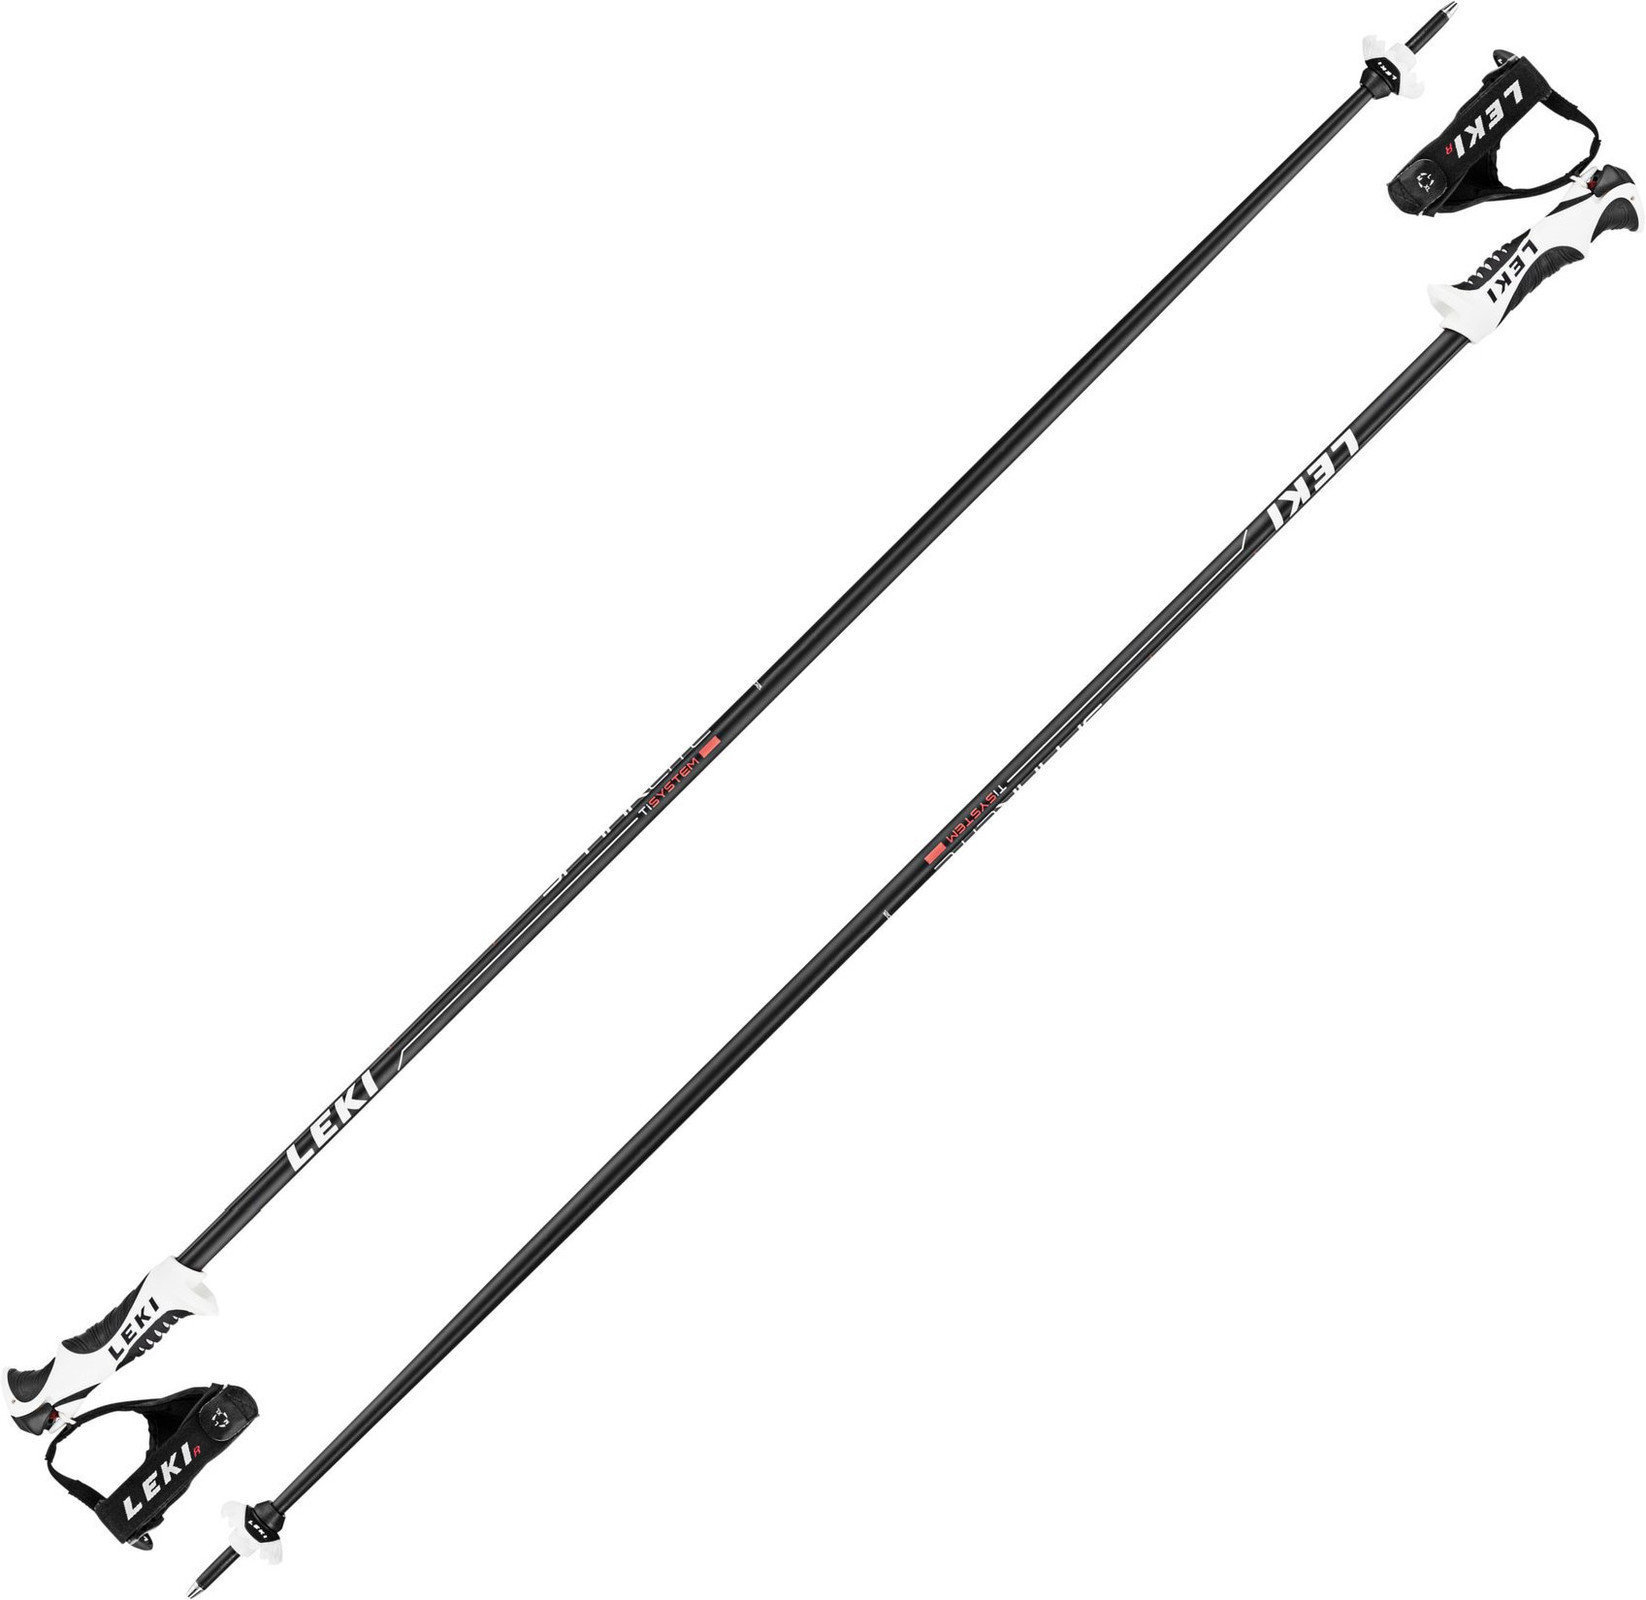 Ski Poles Leki Spark Lite S Black/Light-Anthracite-White-Neonred 135 17/18